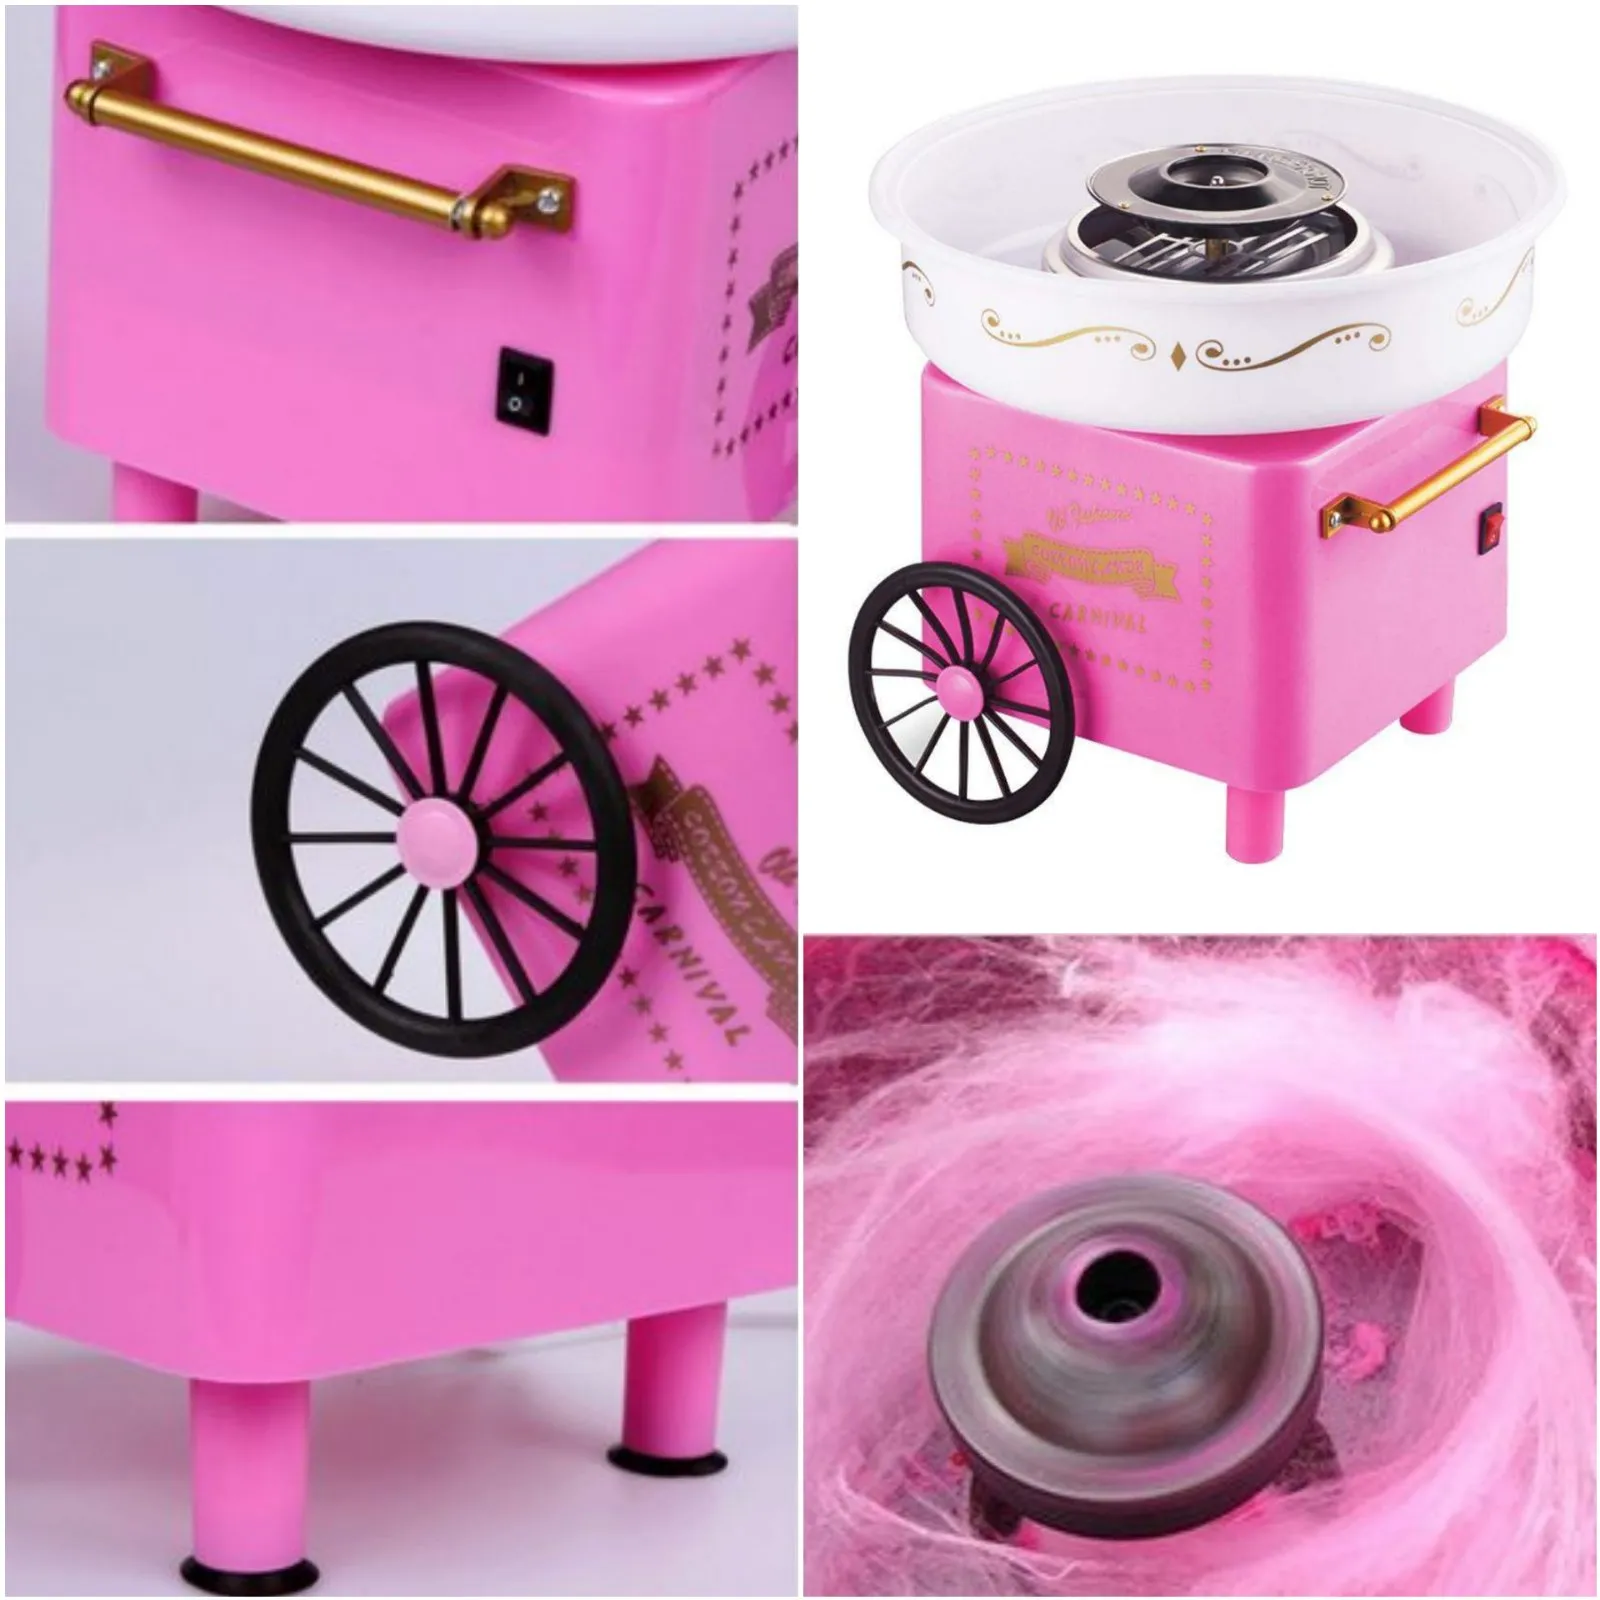 Машина за захарен памук, розова, 520W РЕТРО ДИЗАЙН, Пепа Пиг, Peppa Pig 4